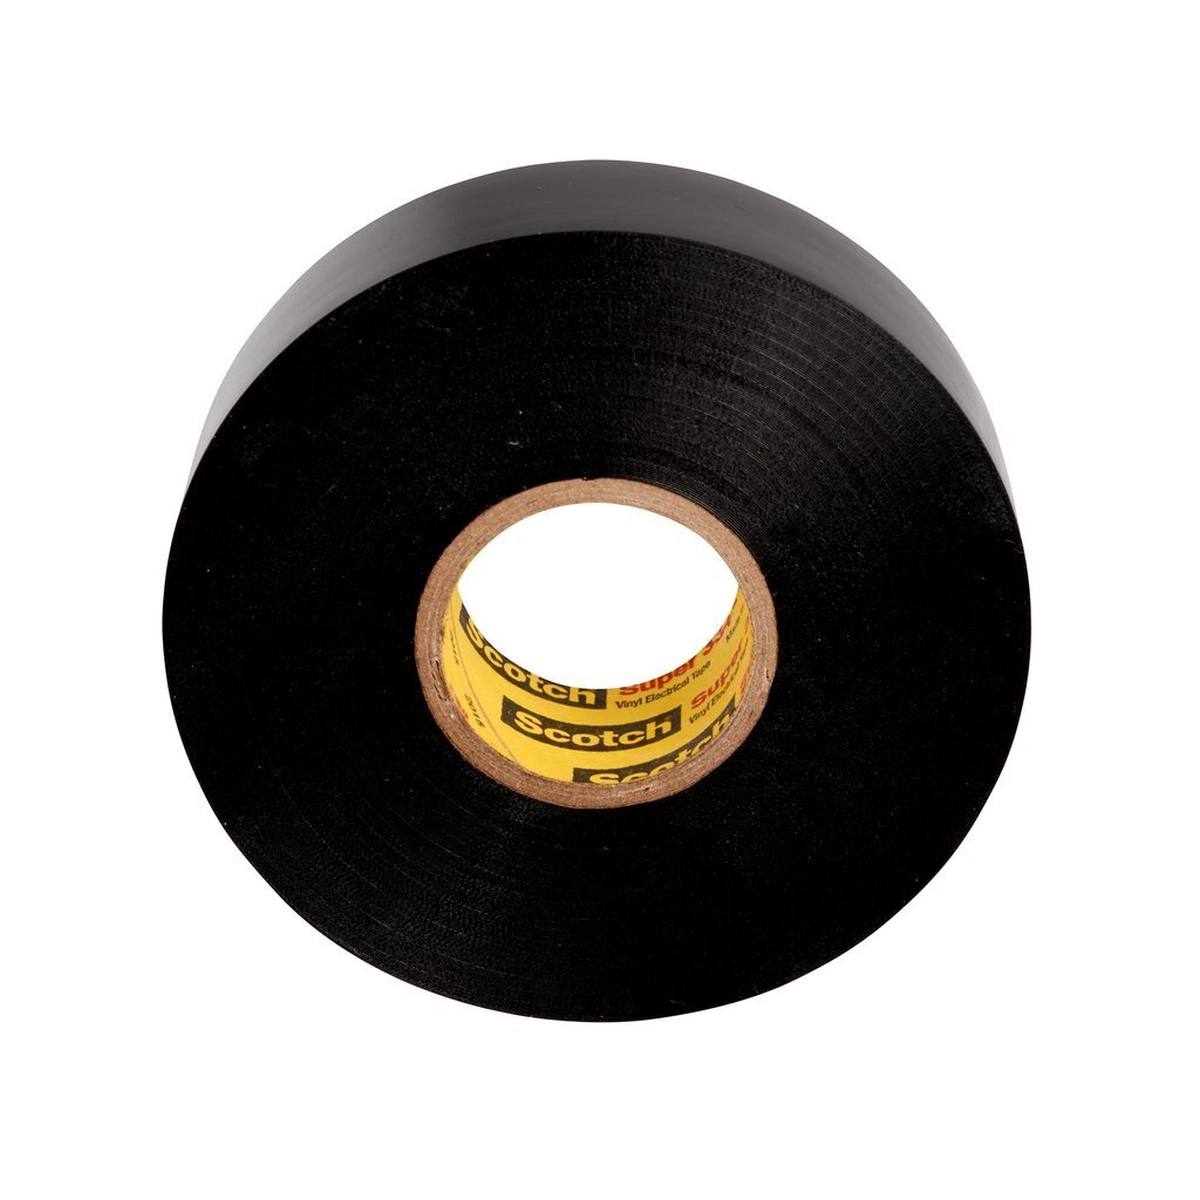 3M Scotch Super 33+ vinyl electrical insulating tape, black, 19 mm x 6 m, 0.18 mm